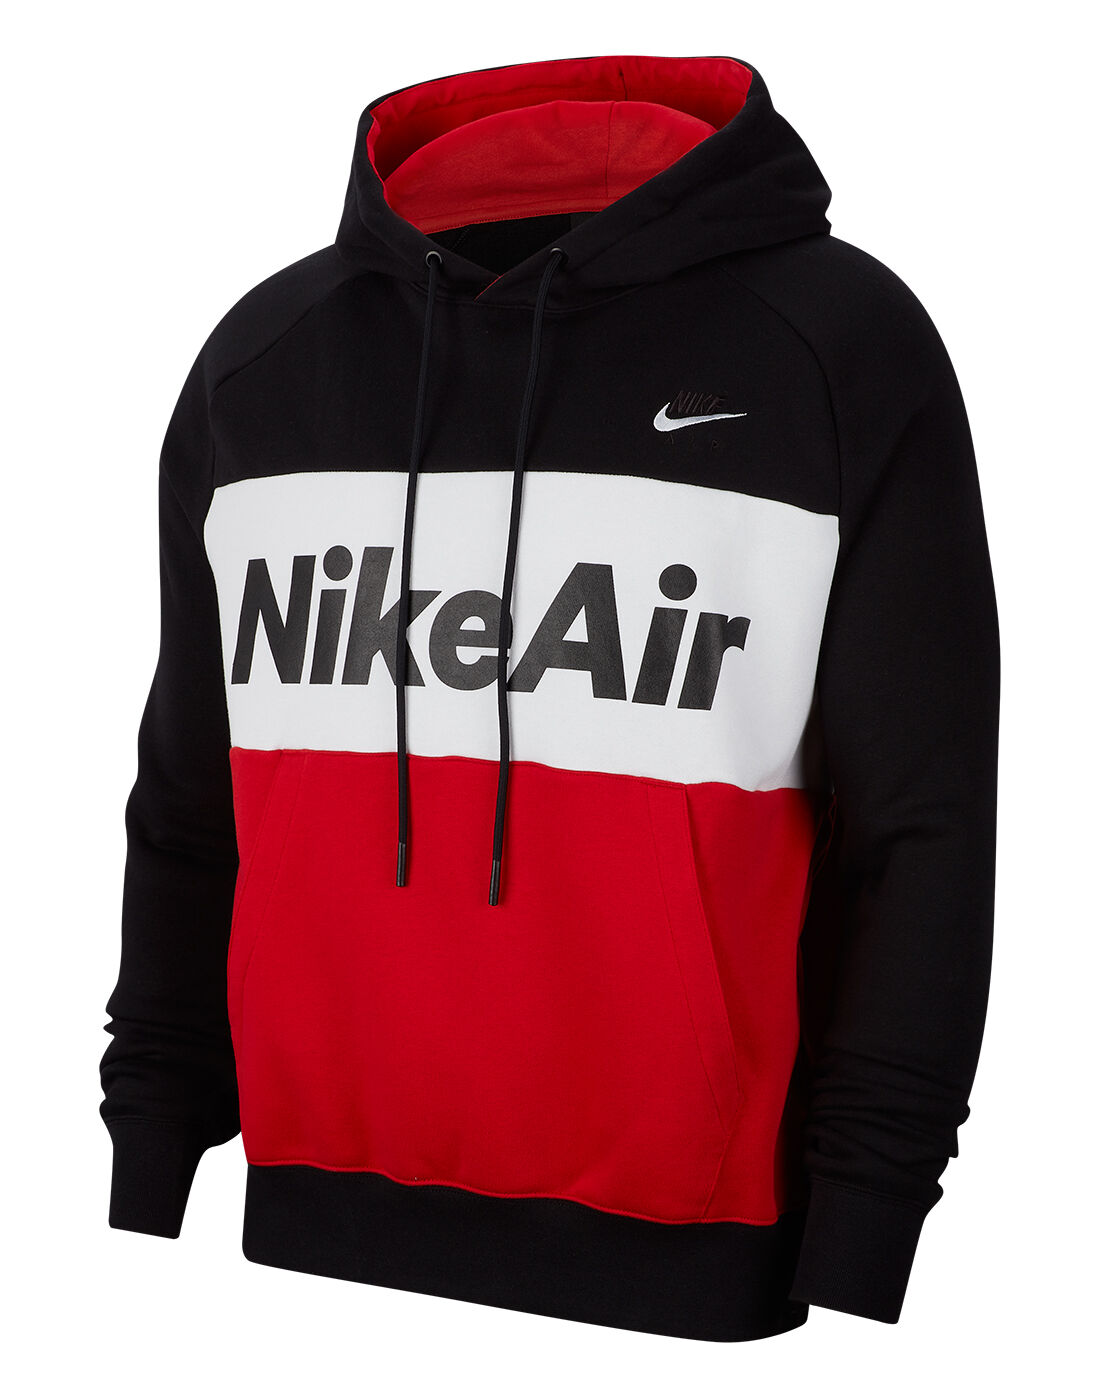 red and black nike air hoodie